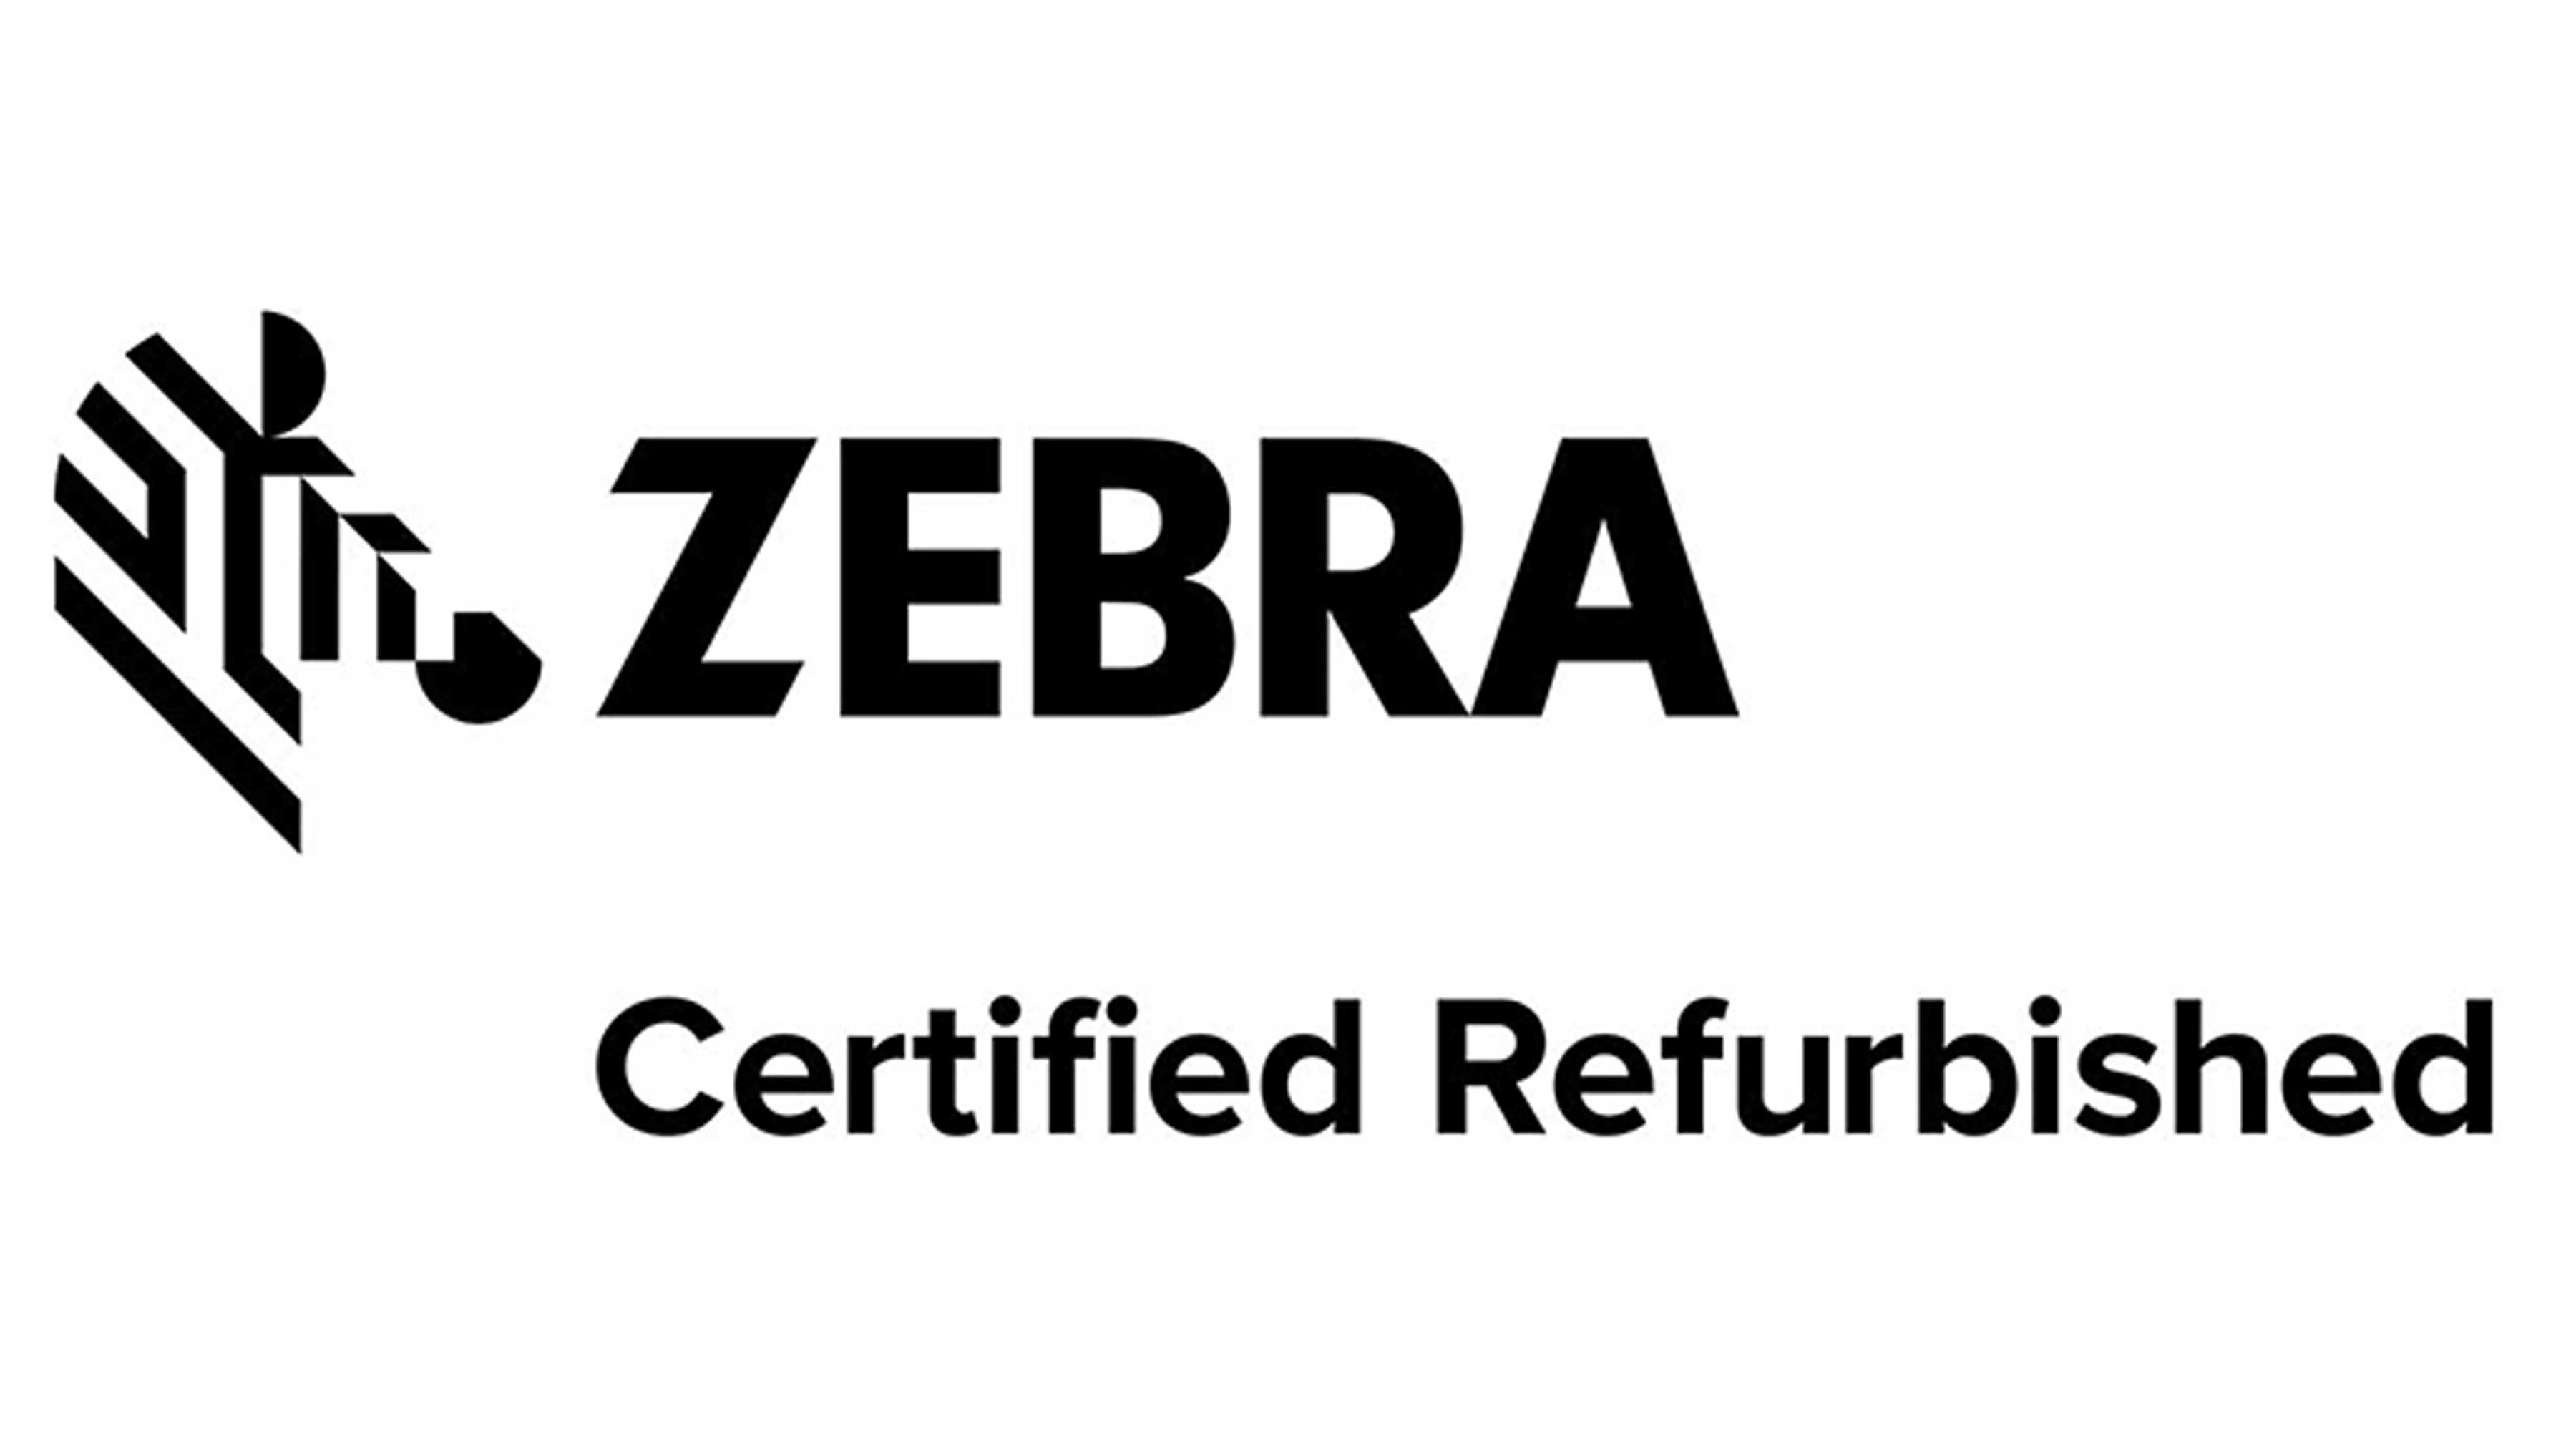 Zebra Certified Refurbished, Photography Website, Hero, 16:9 3600